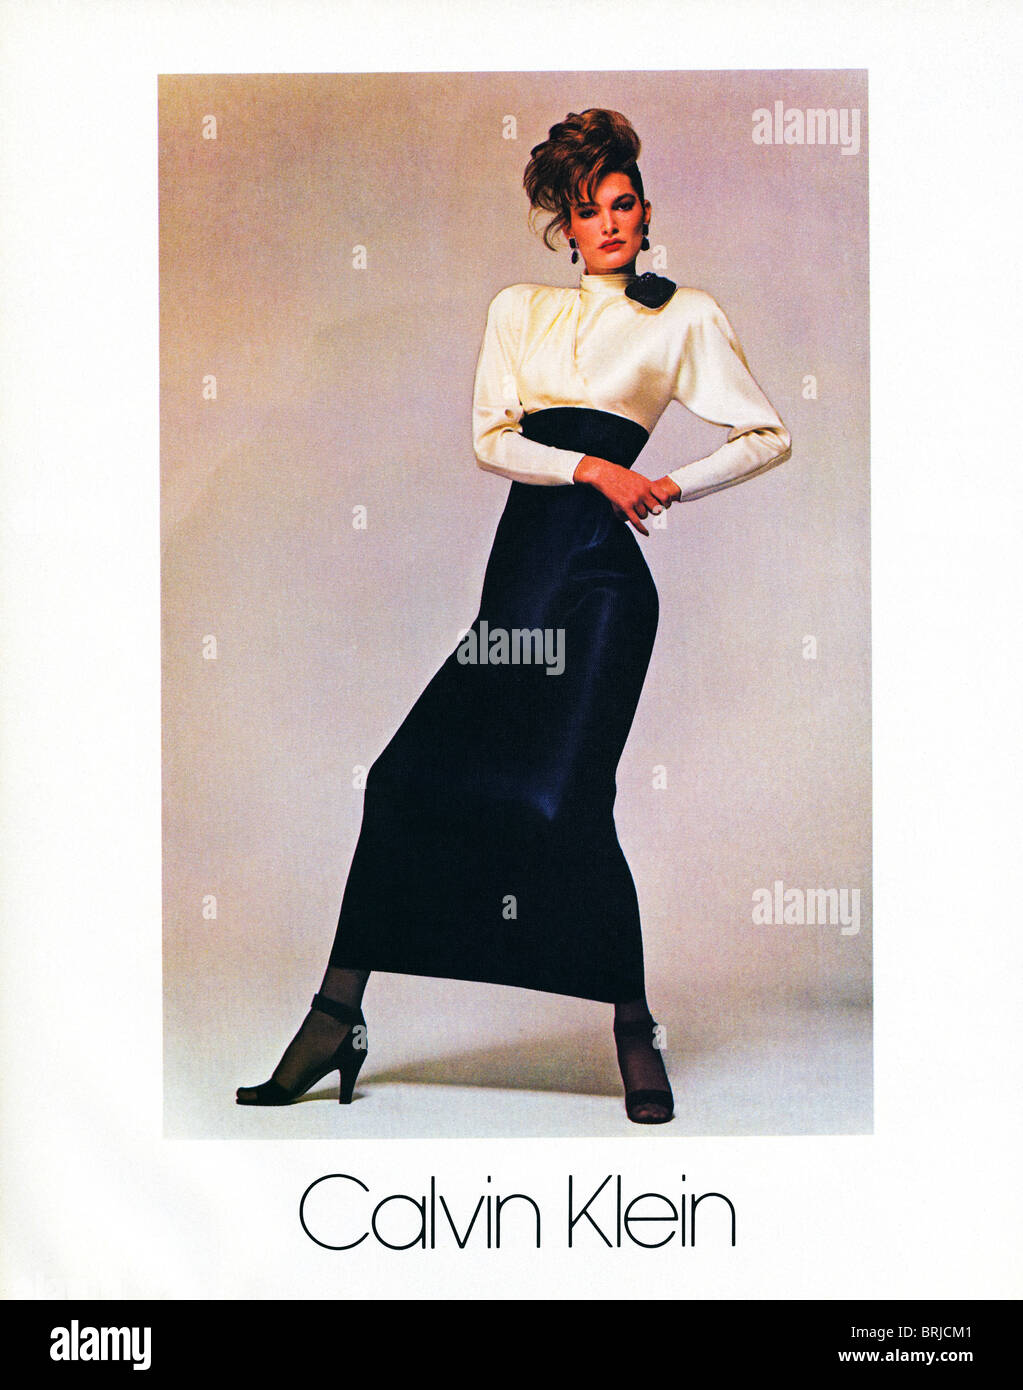 Klassische Calvin Klein Werbung Werbung Fur Modedesigner Calvin Klein Im Amerikanischen Modemagazin Um 19 Stockfotografie Alamy